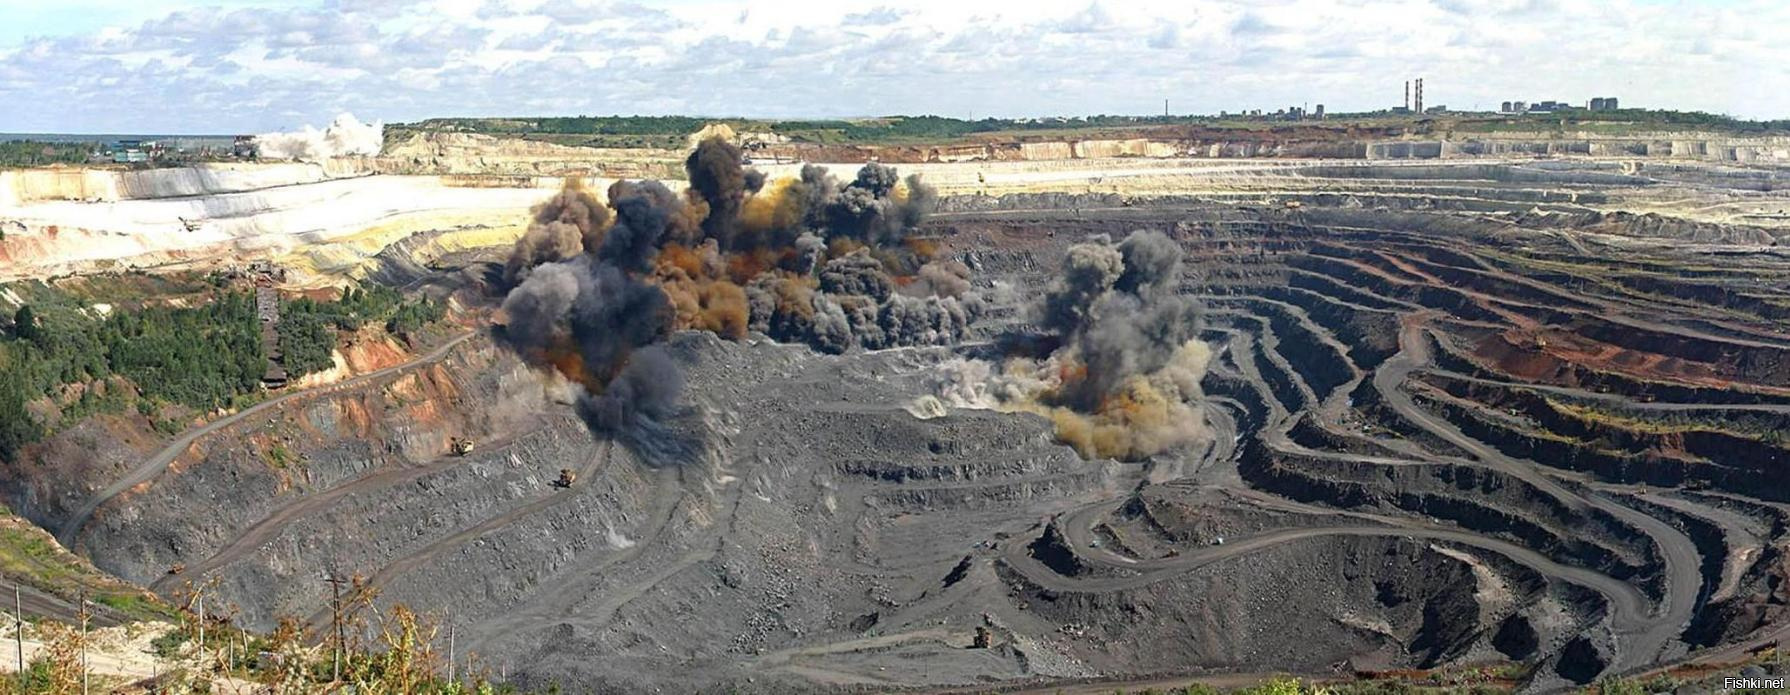 Минусинский угольный бассейн месторождения